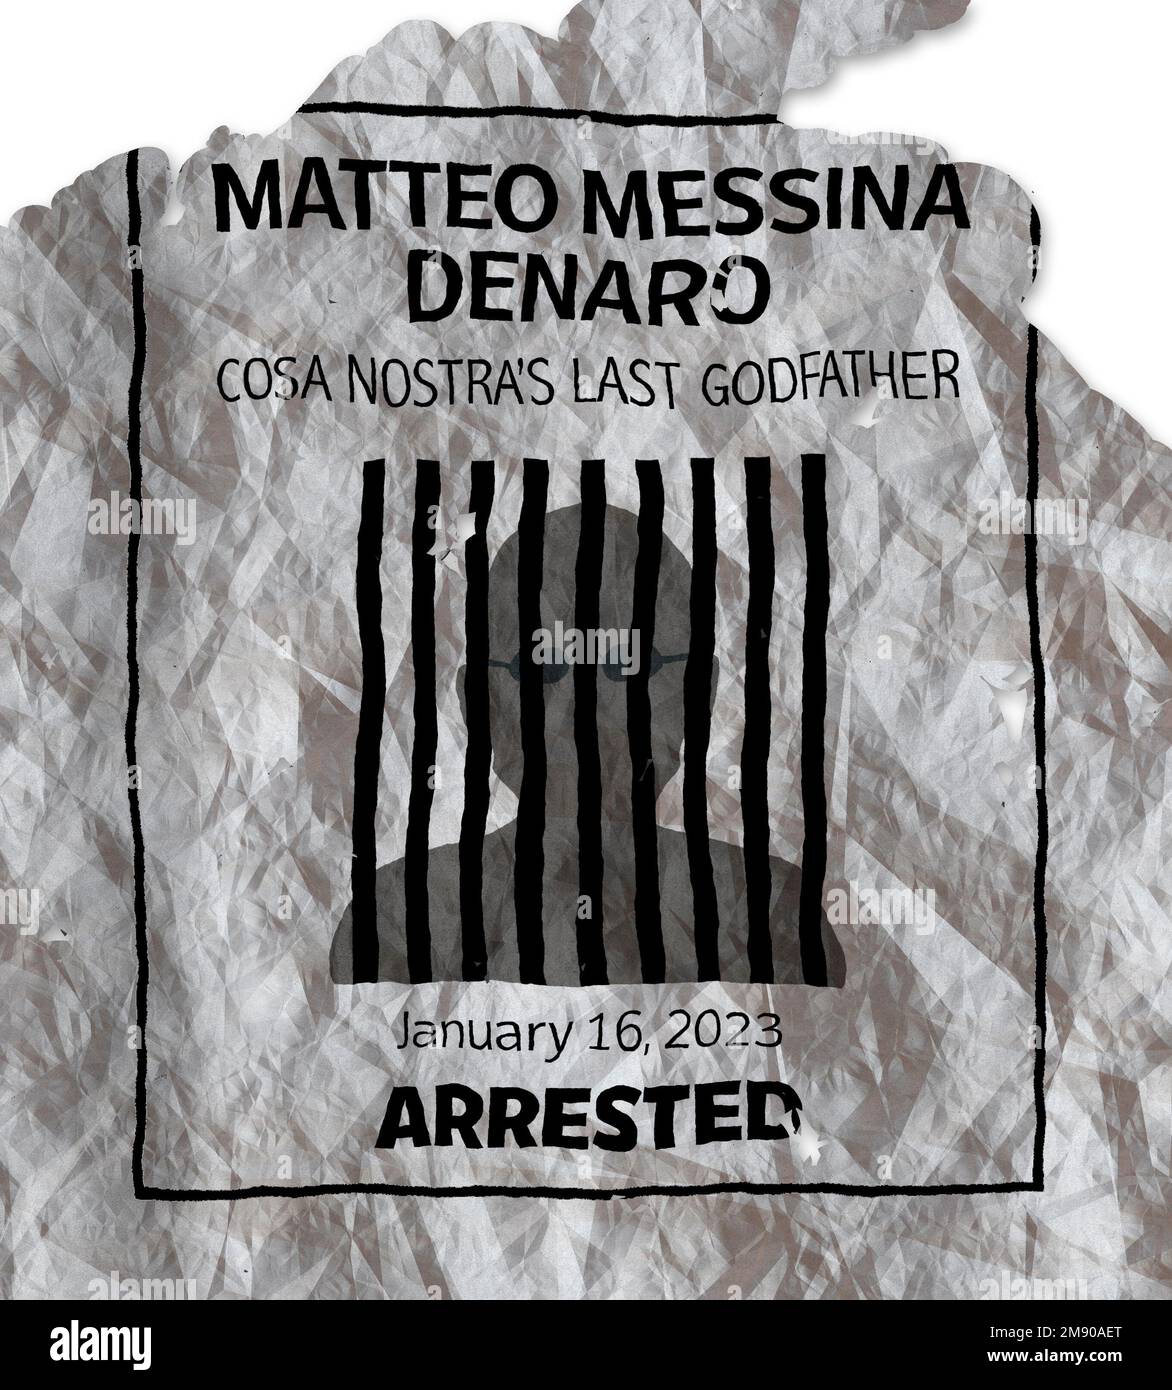 Arrestation du super-fugitif Matteo Messina Denaro, mafia, mob, parrain de Cosa Nostra. Bossage des bossages. L'arrestation a eu lieu sur 16 janvier 2023 Banque D'Images